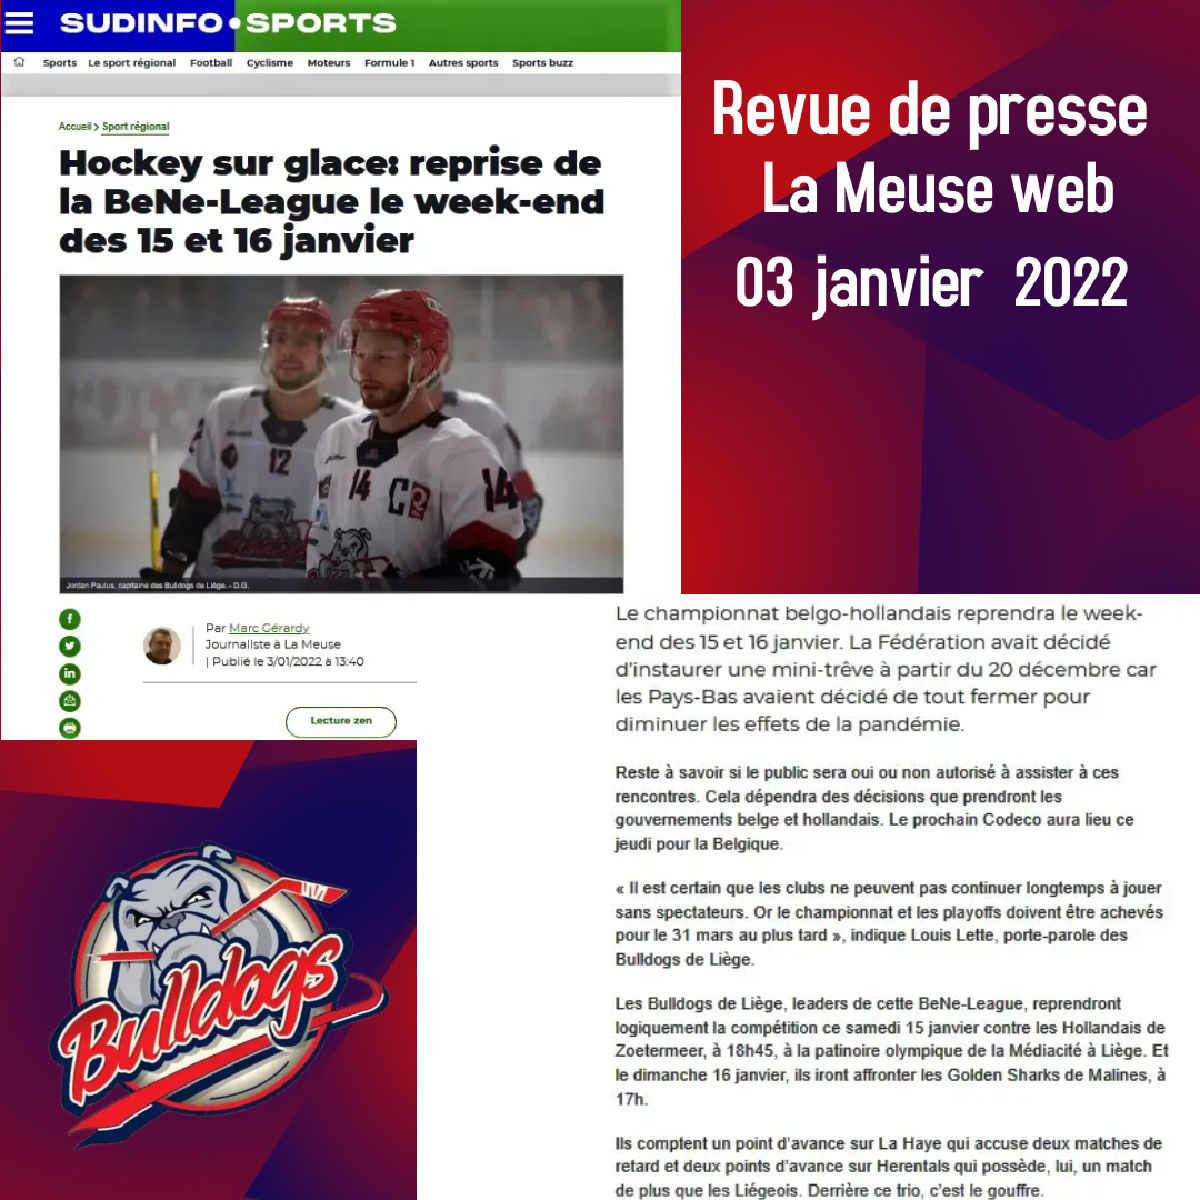 Revue de presse - La Meuse web 03 janvier 2022